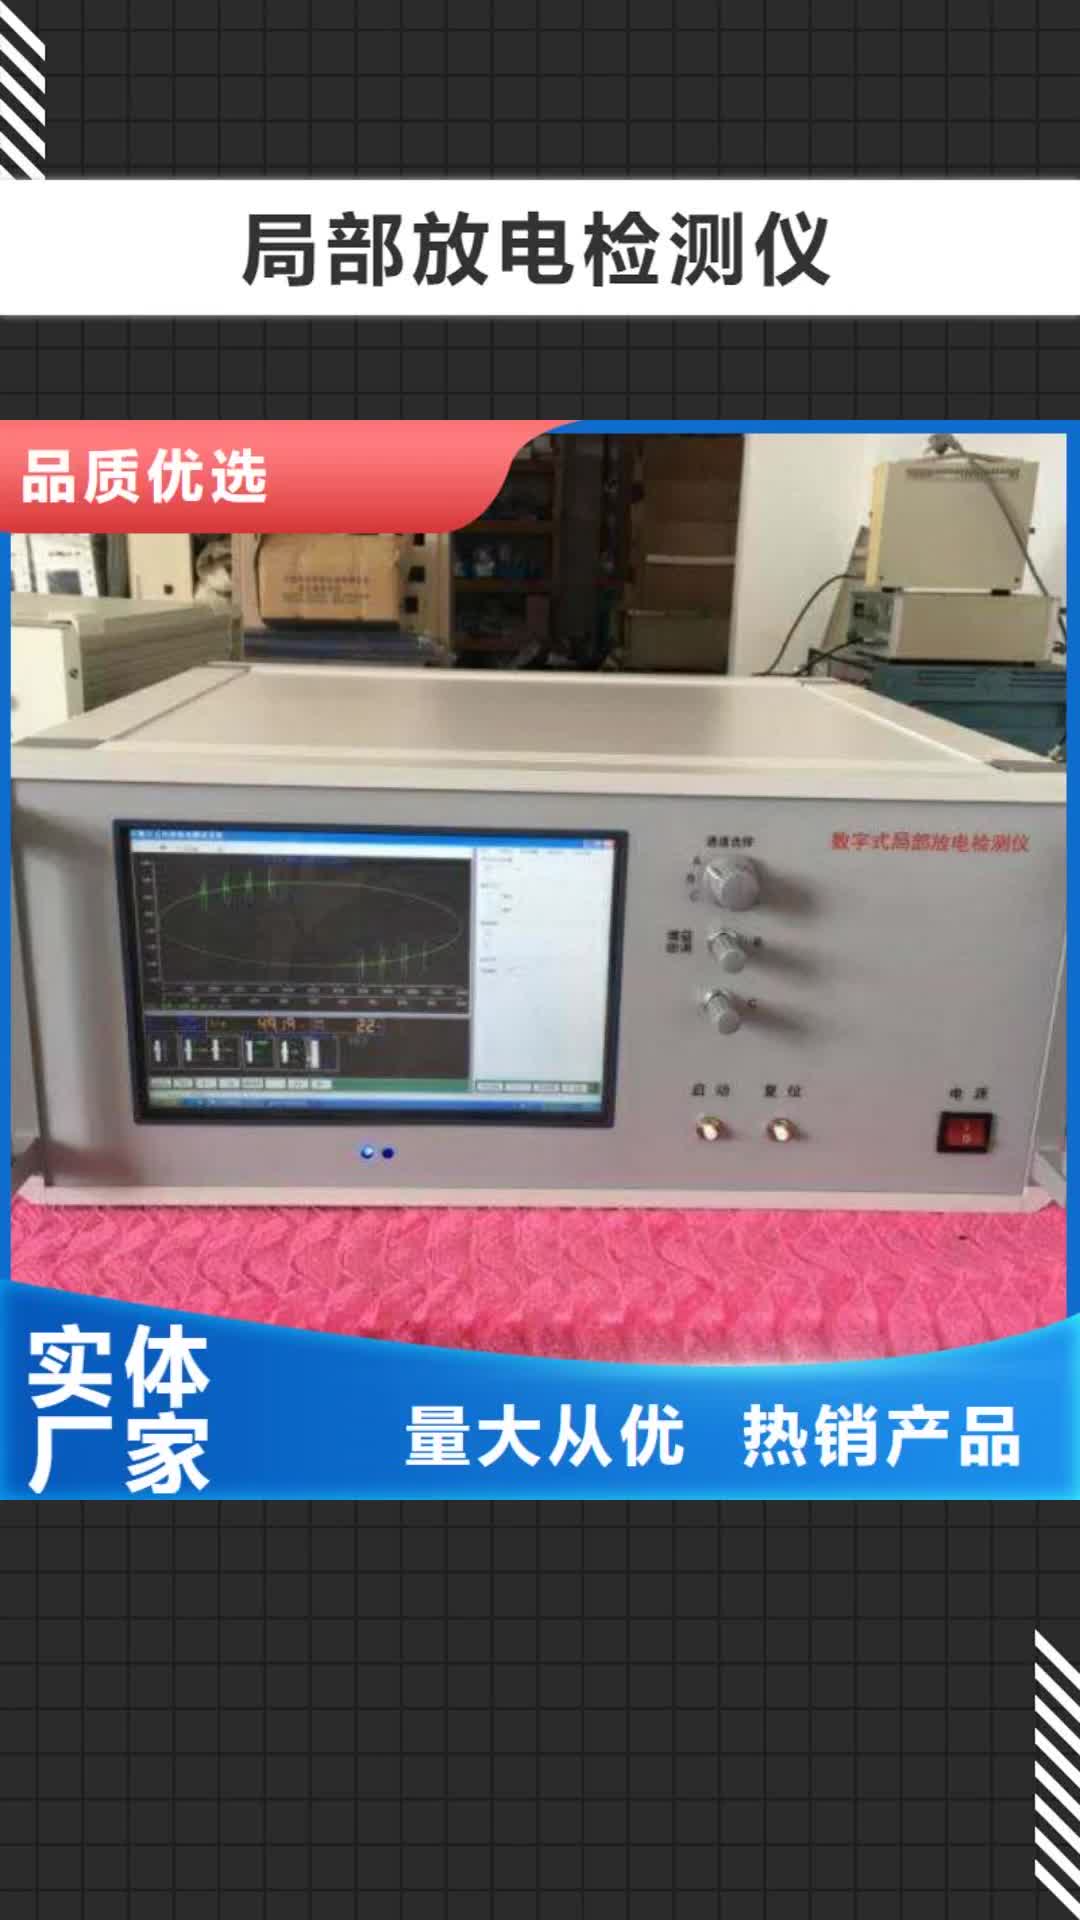 蚌埠 局部放电检测仪,【变频串联谐振耐压试验装置】专业品质